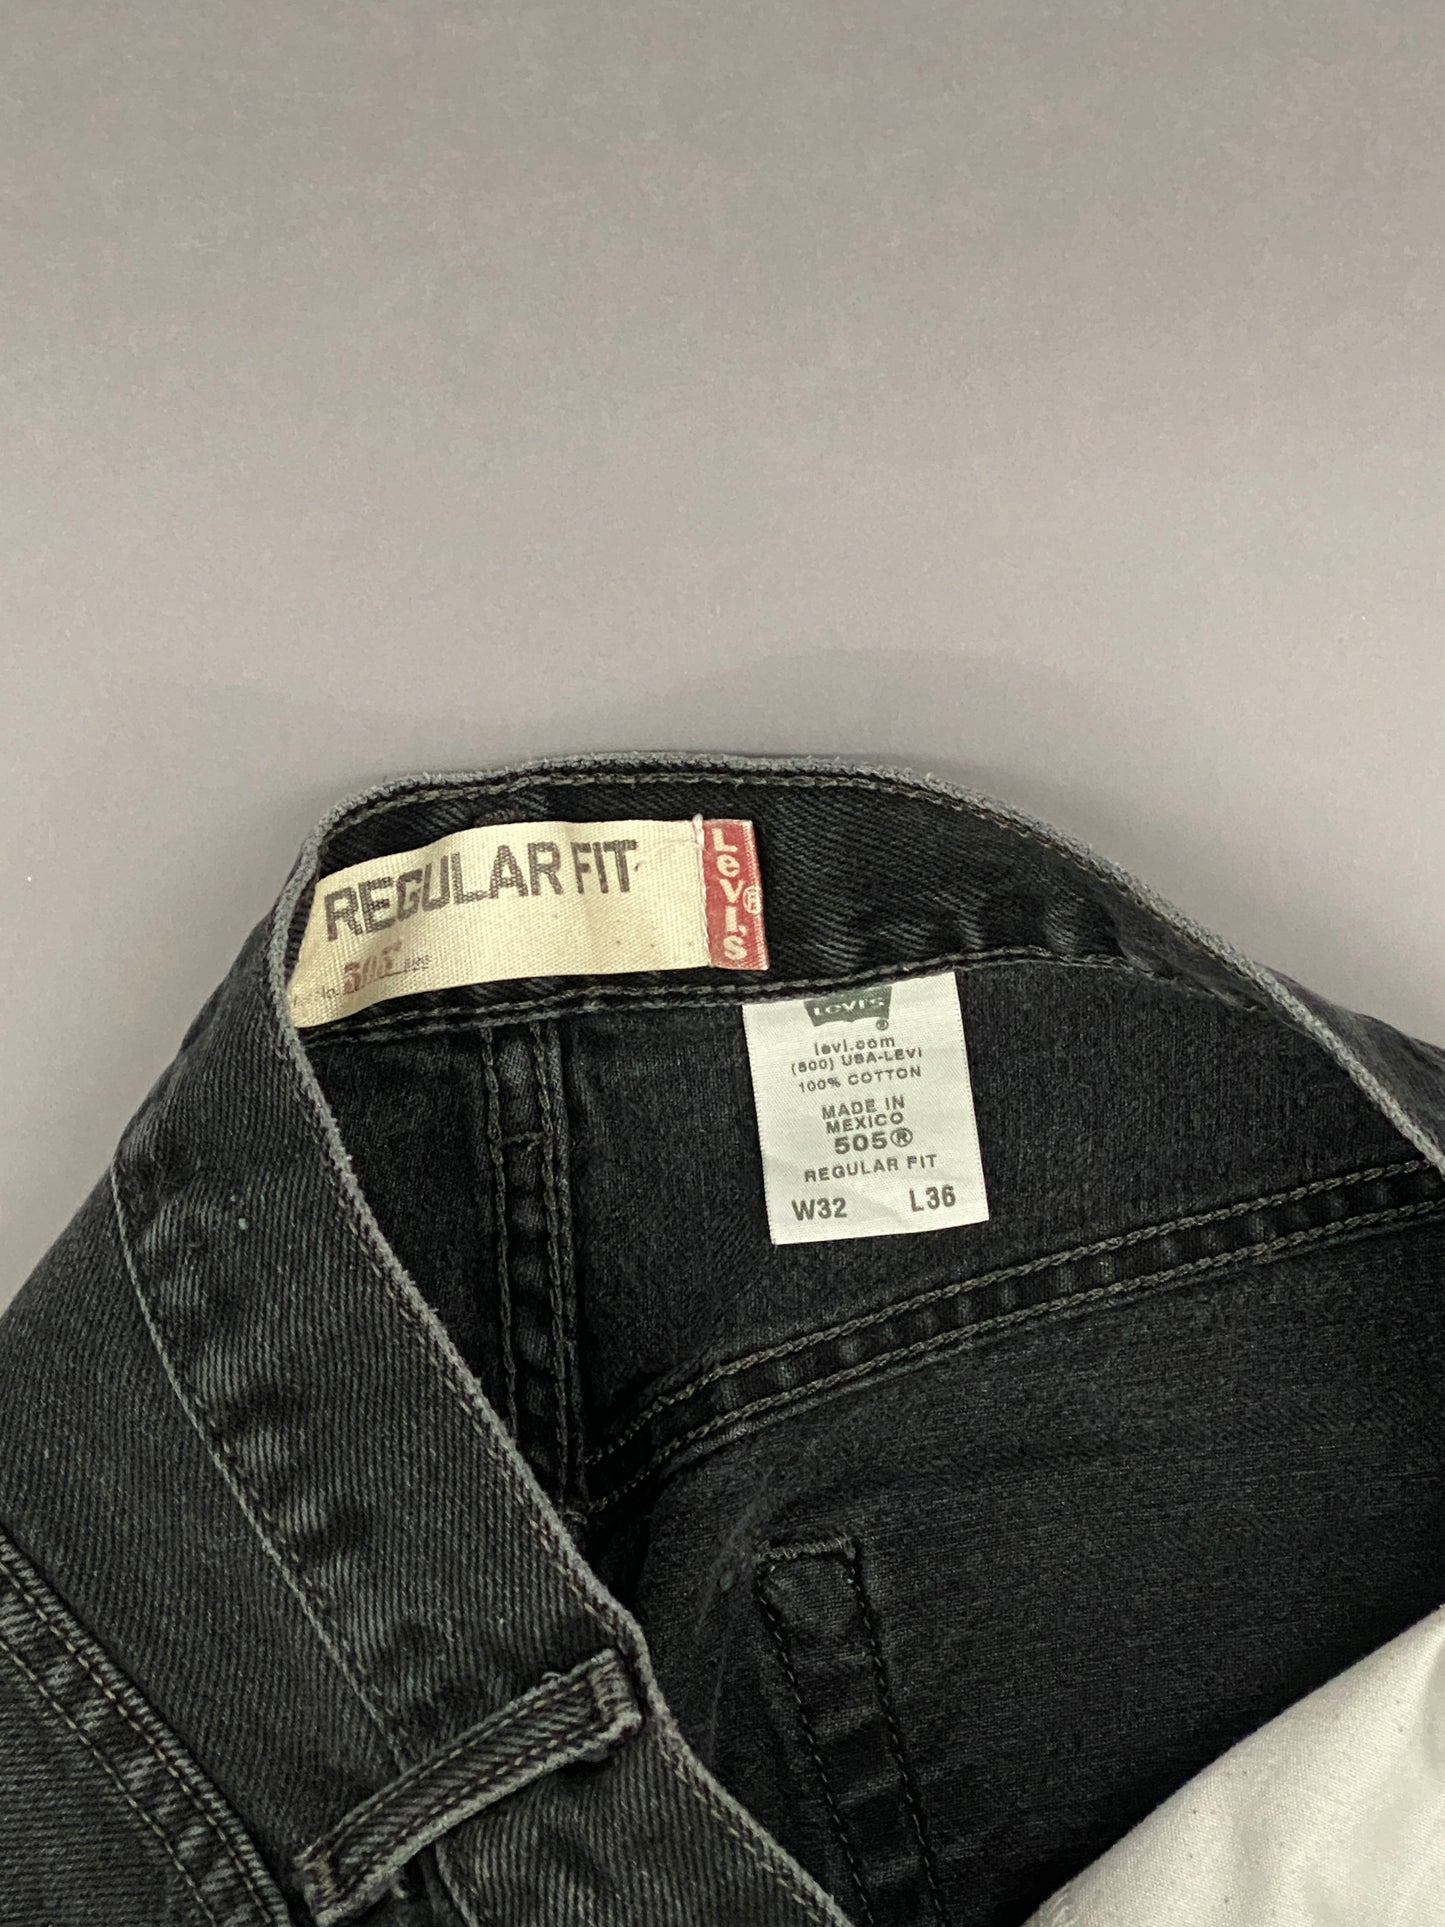 Levis 505 Vintage Jeans - 32 x 36